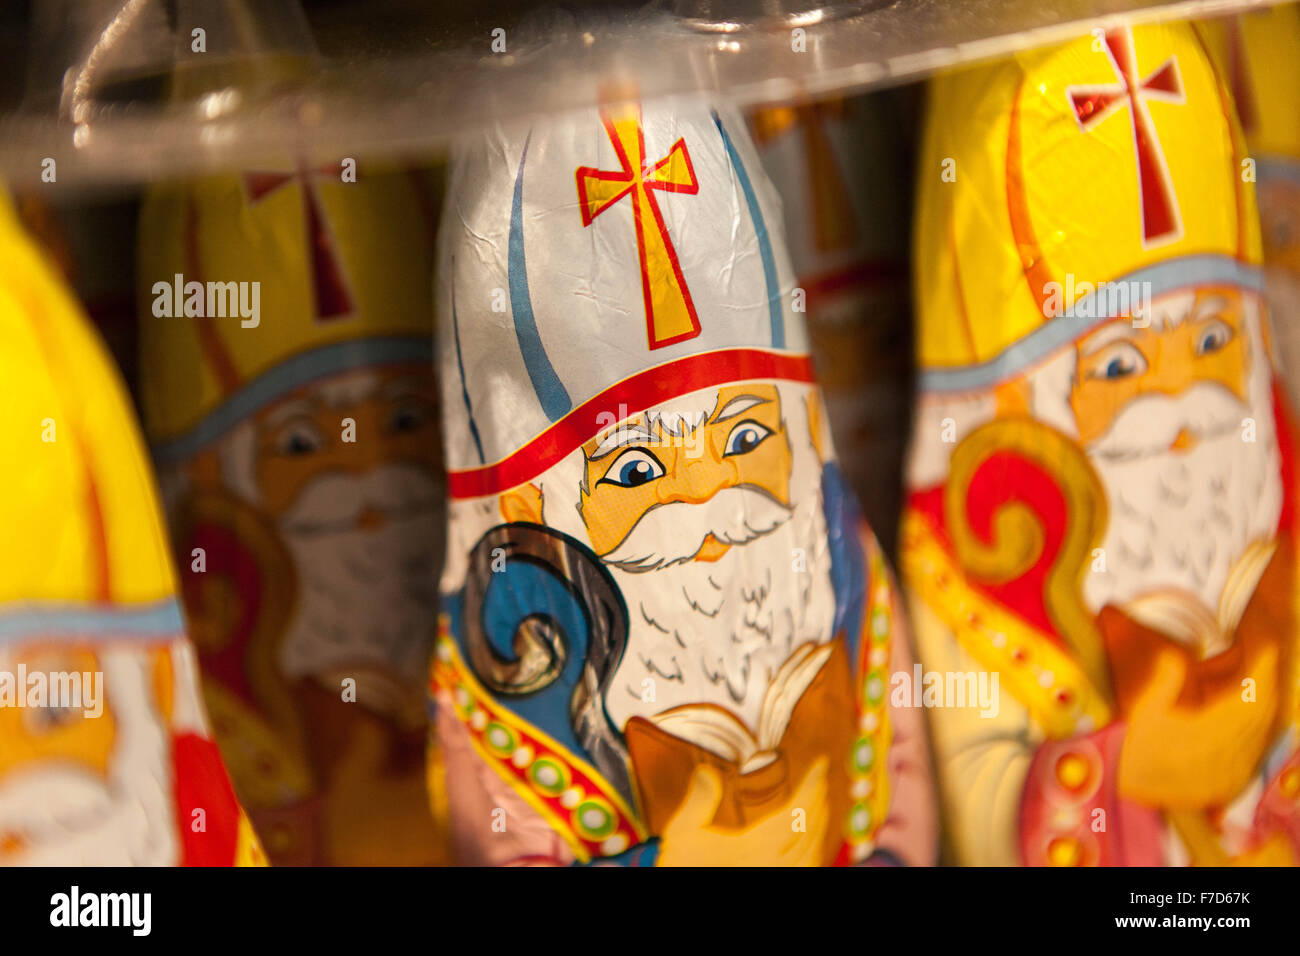 Des figurines de chocolat de Saint Nicholas sont exposées dans une étagère de supermarché. Banque D'Images